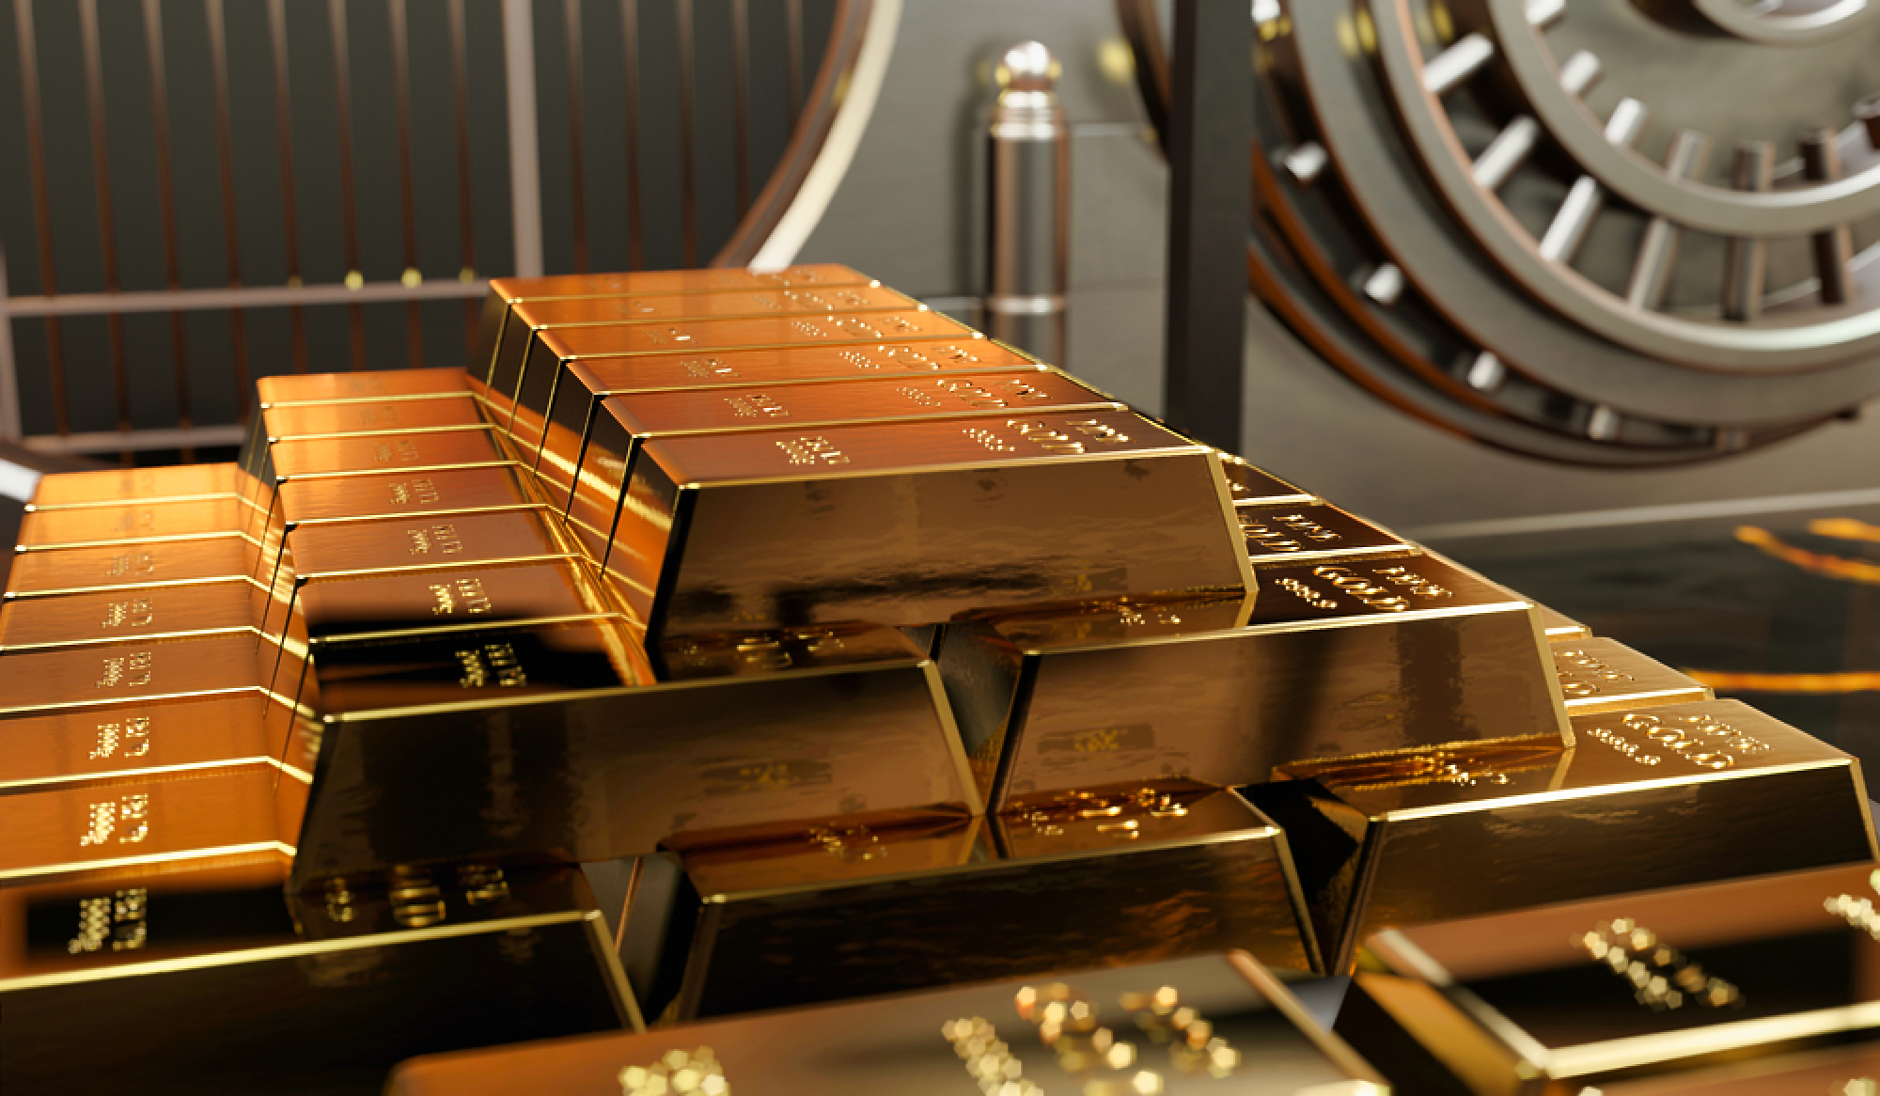 Прогноза на UBS:  Цената на златото ще скочи до $2100  за тройунция в края на 2023 г.